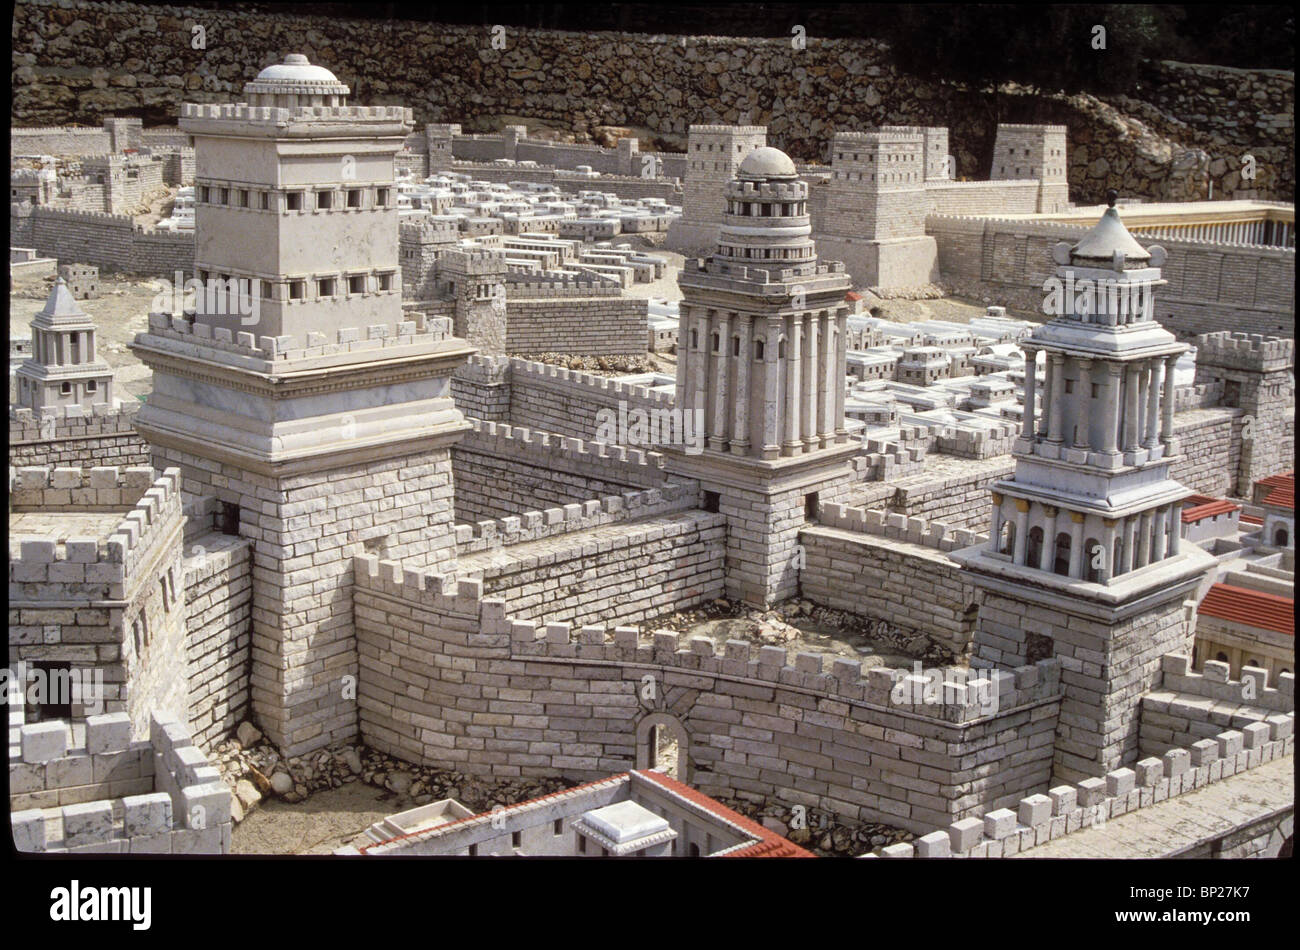 896. MODELL DER PALAST DES HERODES IN JERUSALEM, ZEIGEN DIE DREI TÜRME: PHASAEL (TURM), HIPICUS UND MIRIAM Stockfoto